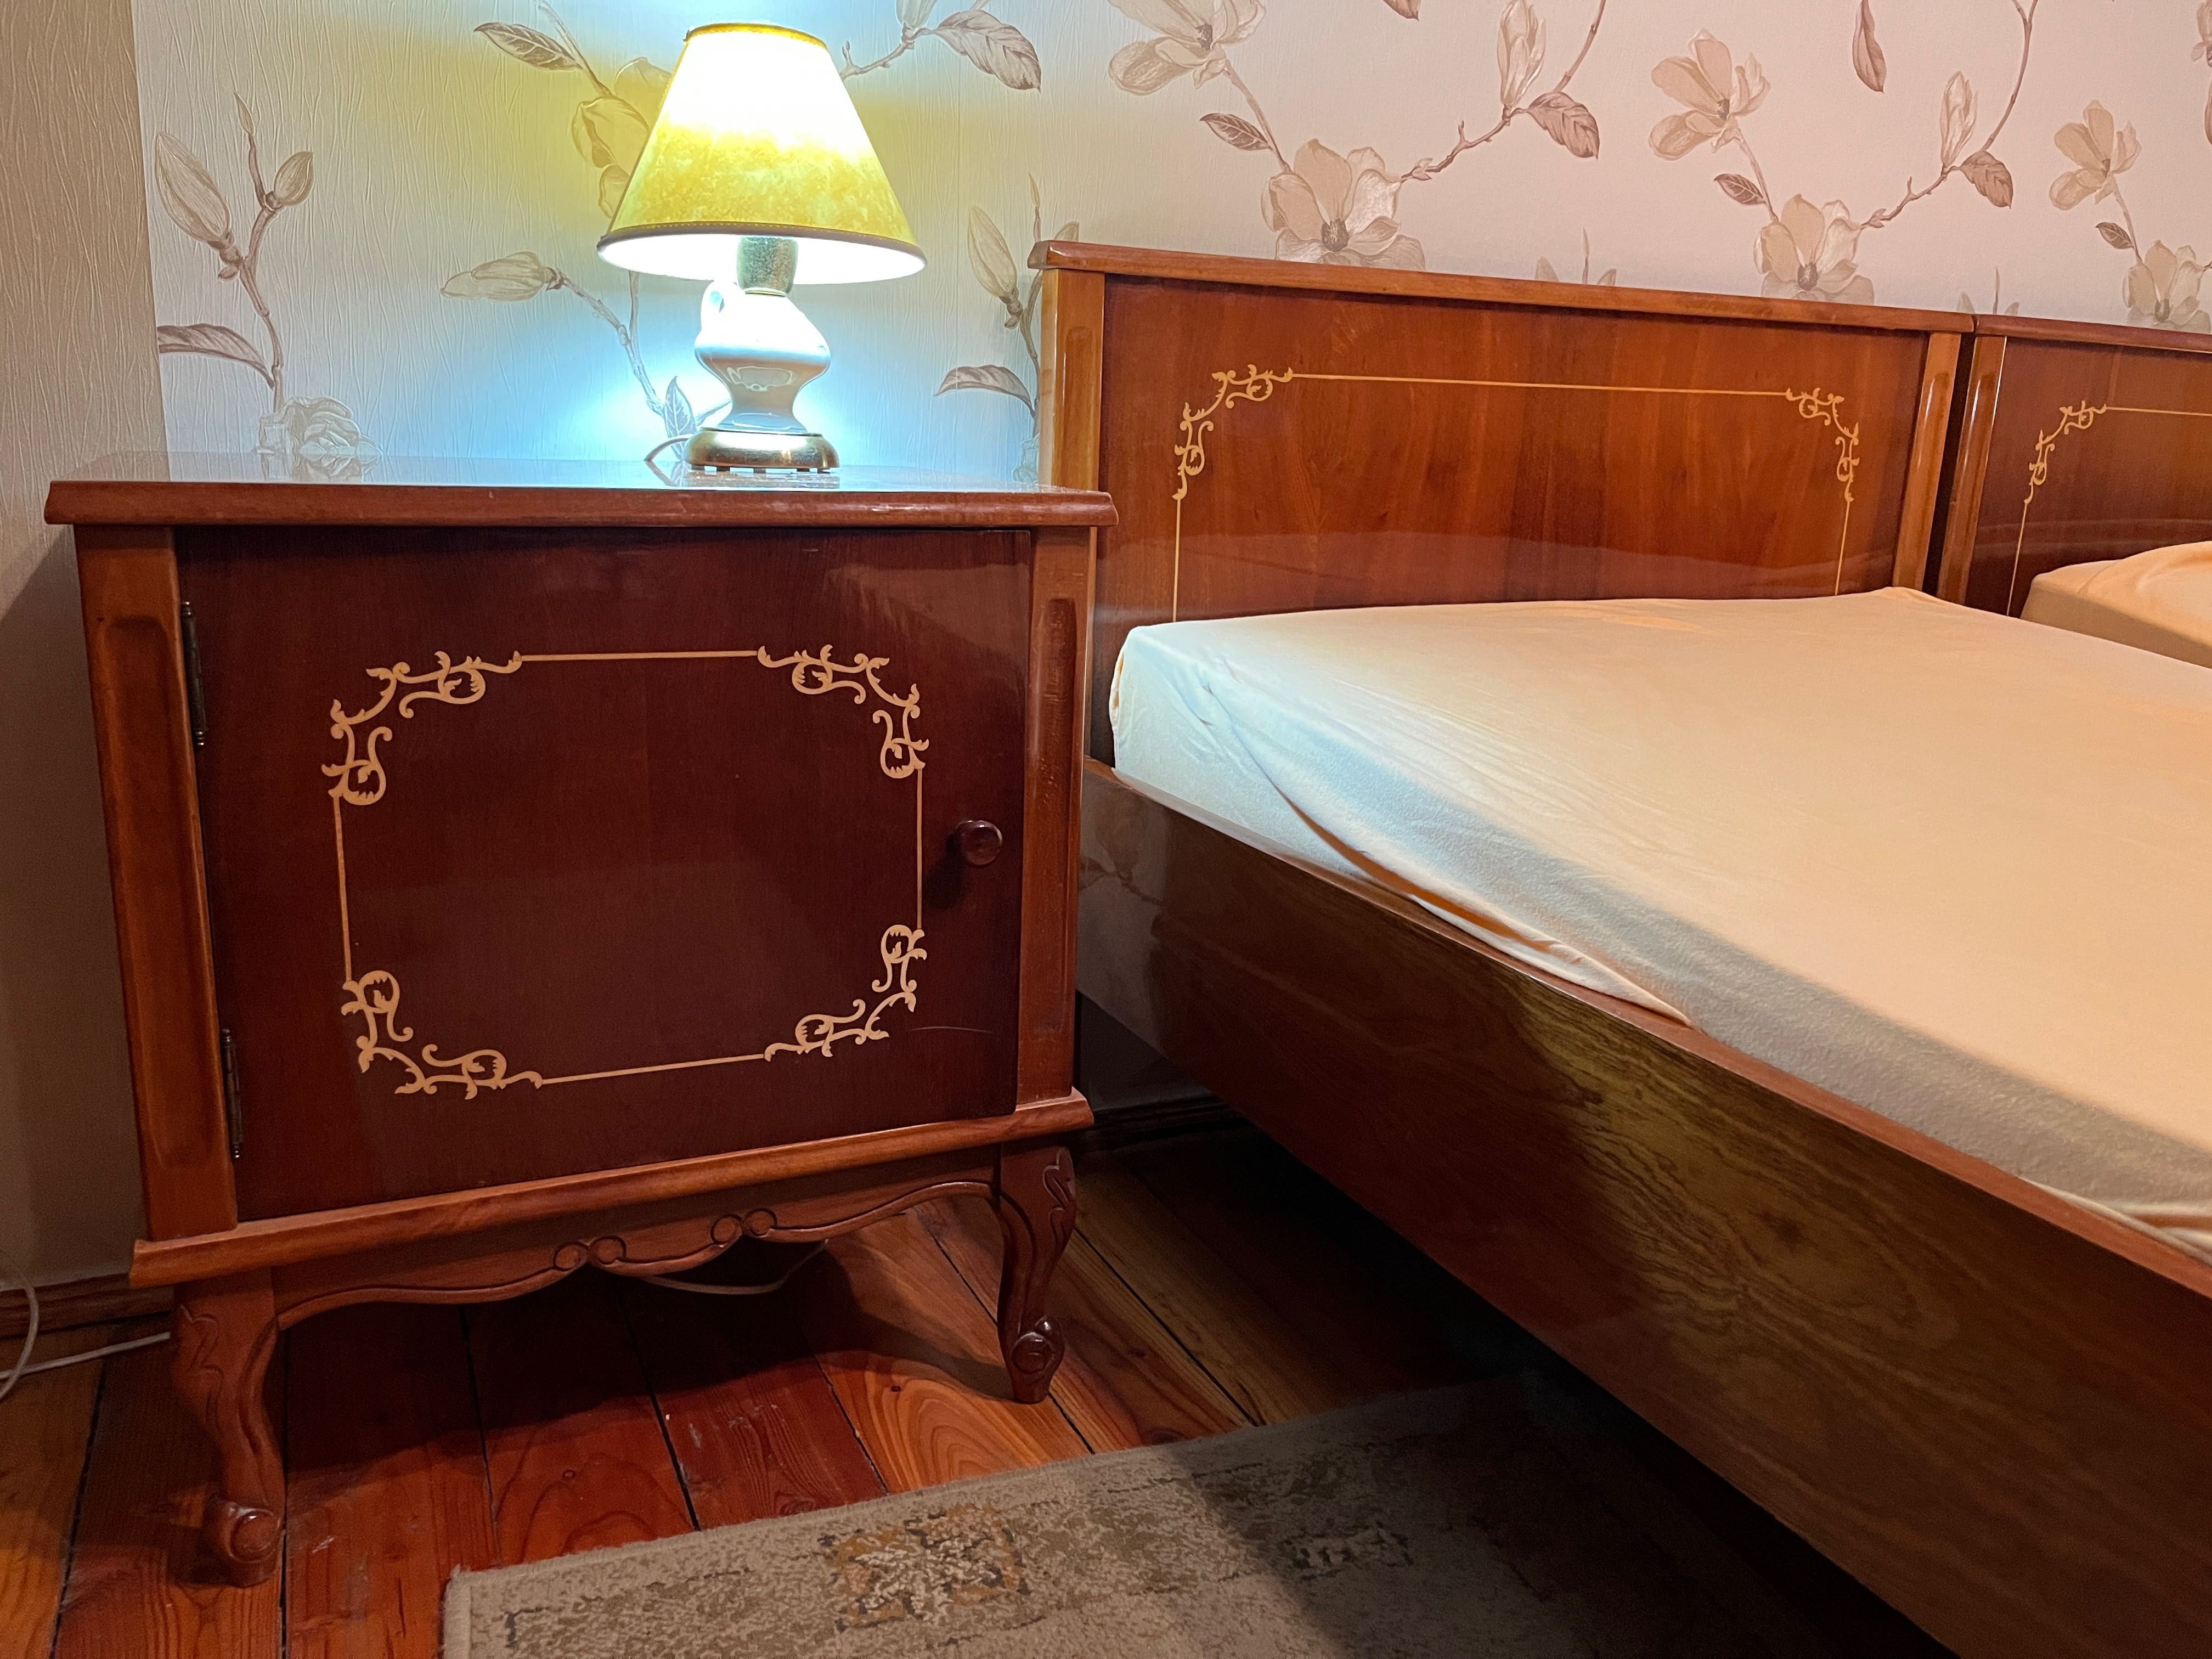 Łóżka fornirowane, produkcji rumuńskiej, lata 80’